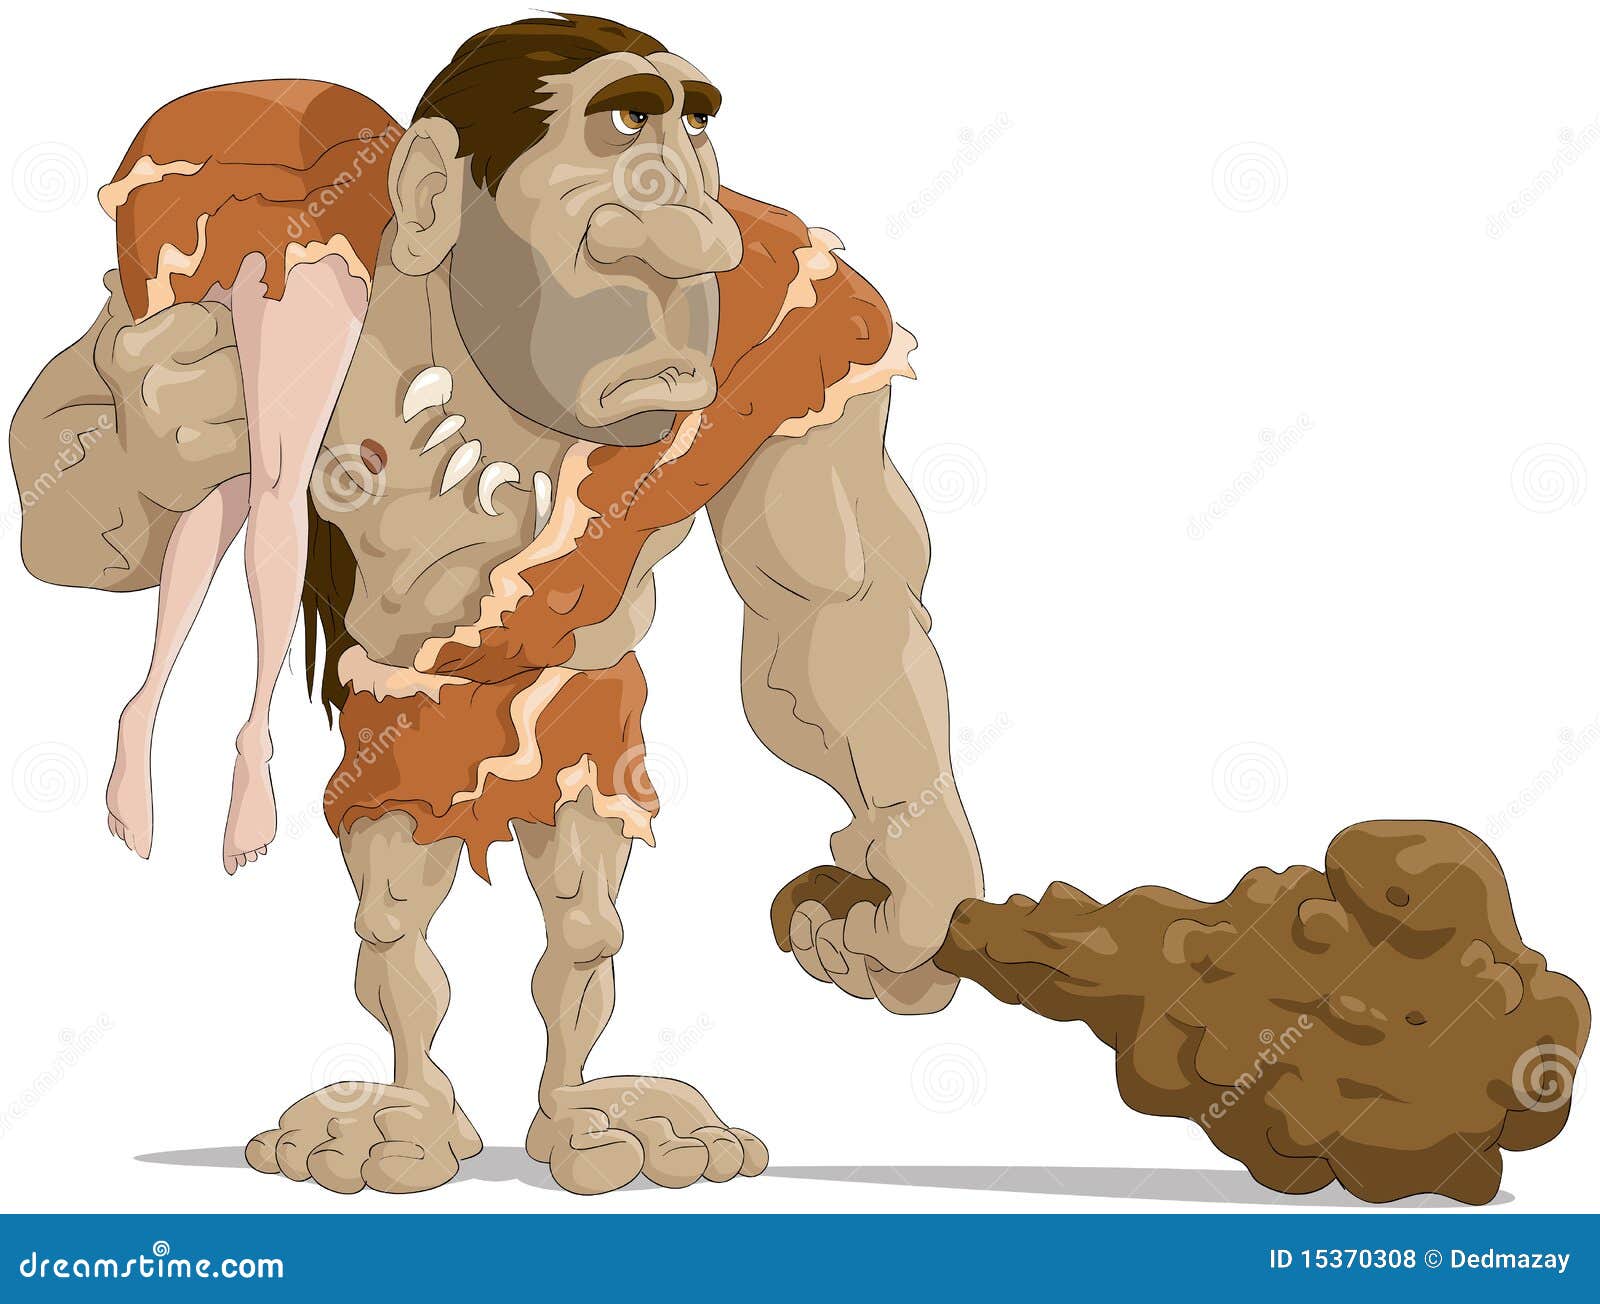 neanderthal-man-15370308.jpg